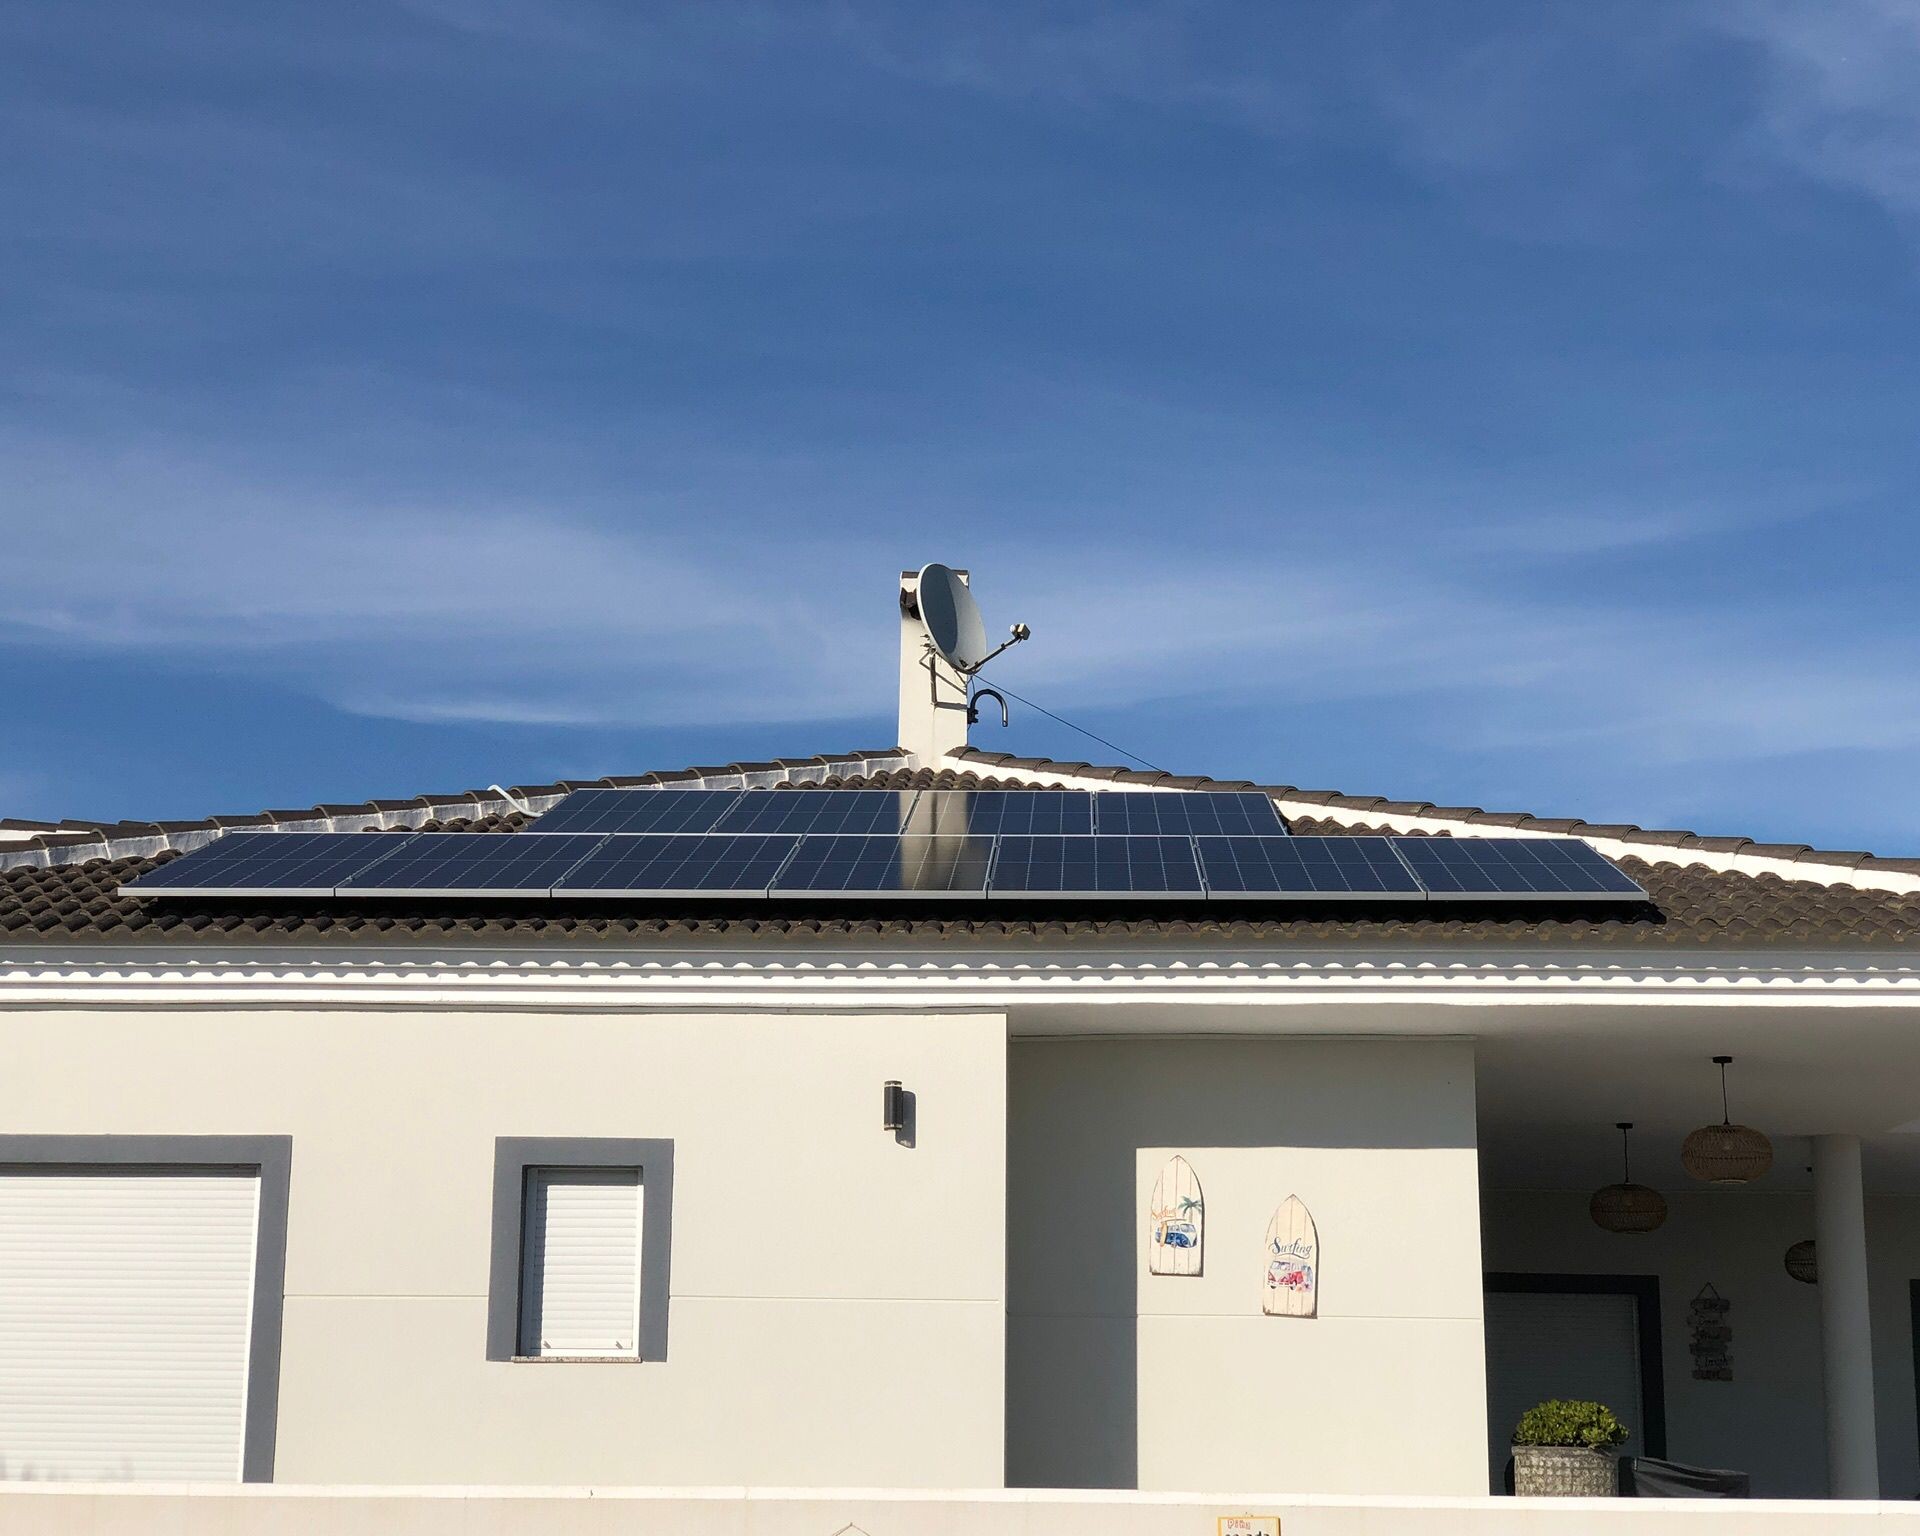 11X 455 wp Solar Panels, Daya Vieja, Alicante (Hybrid system)